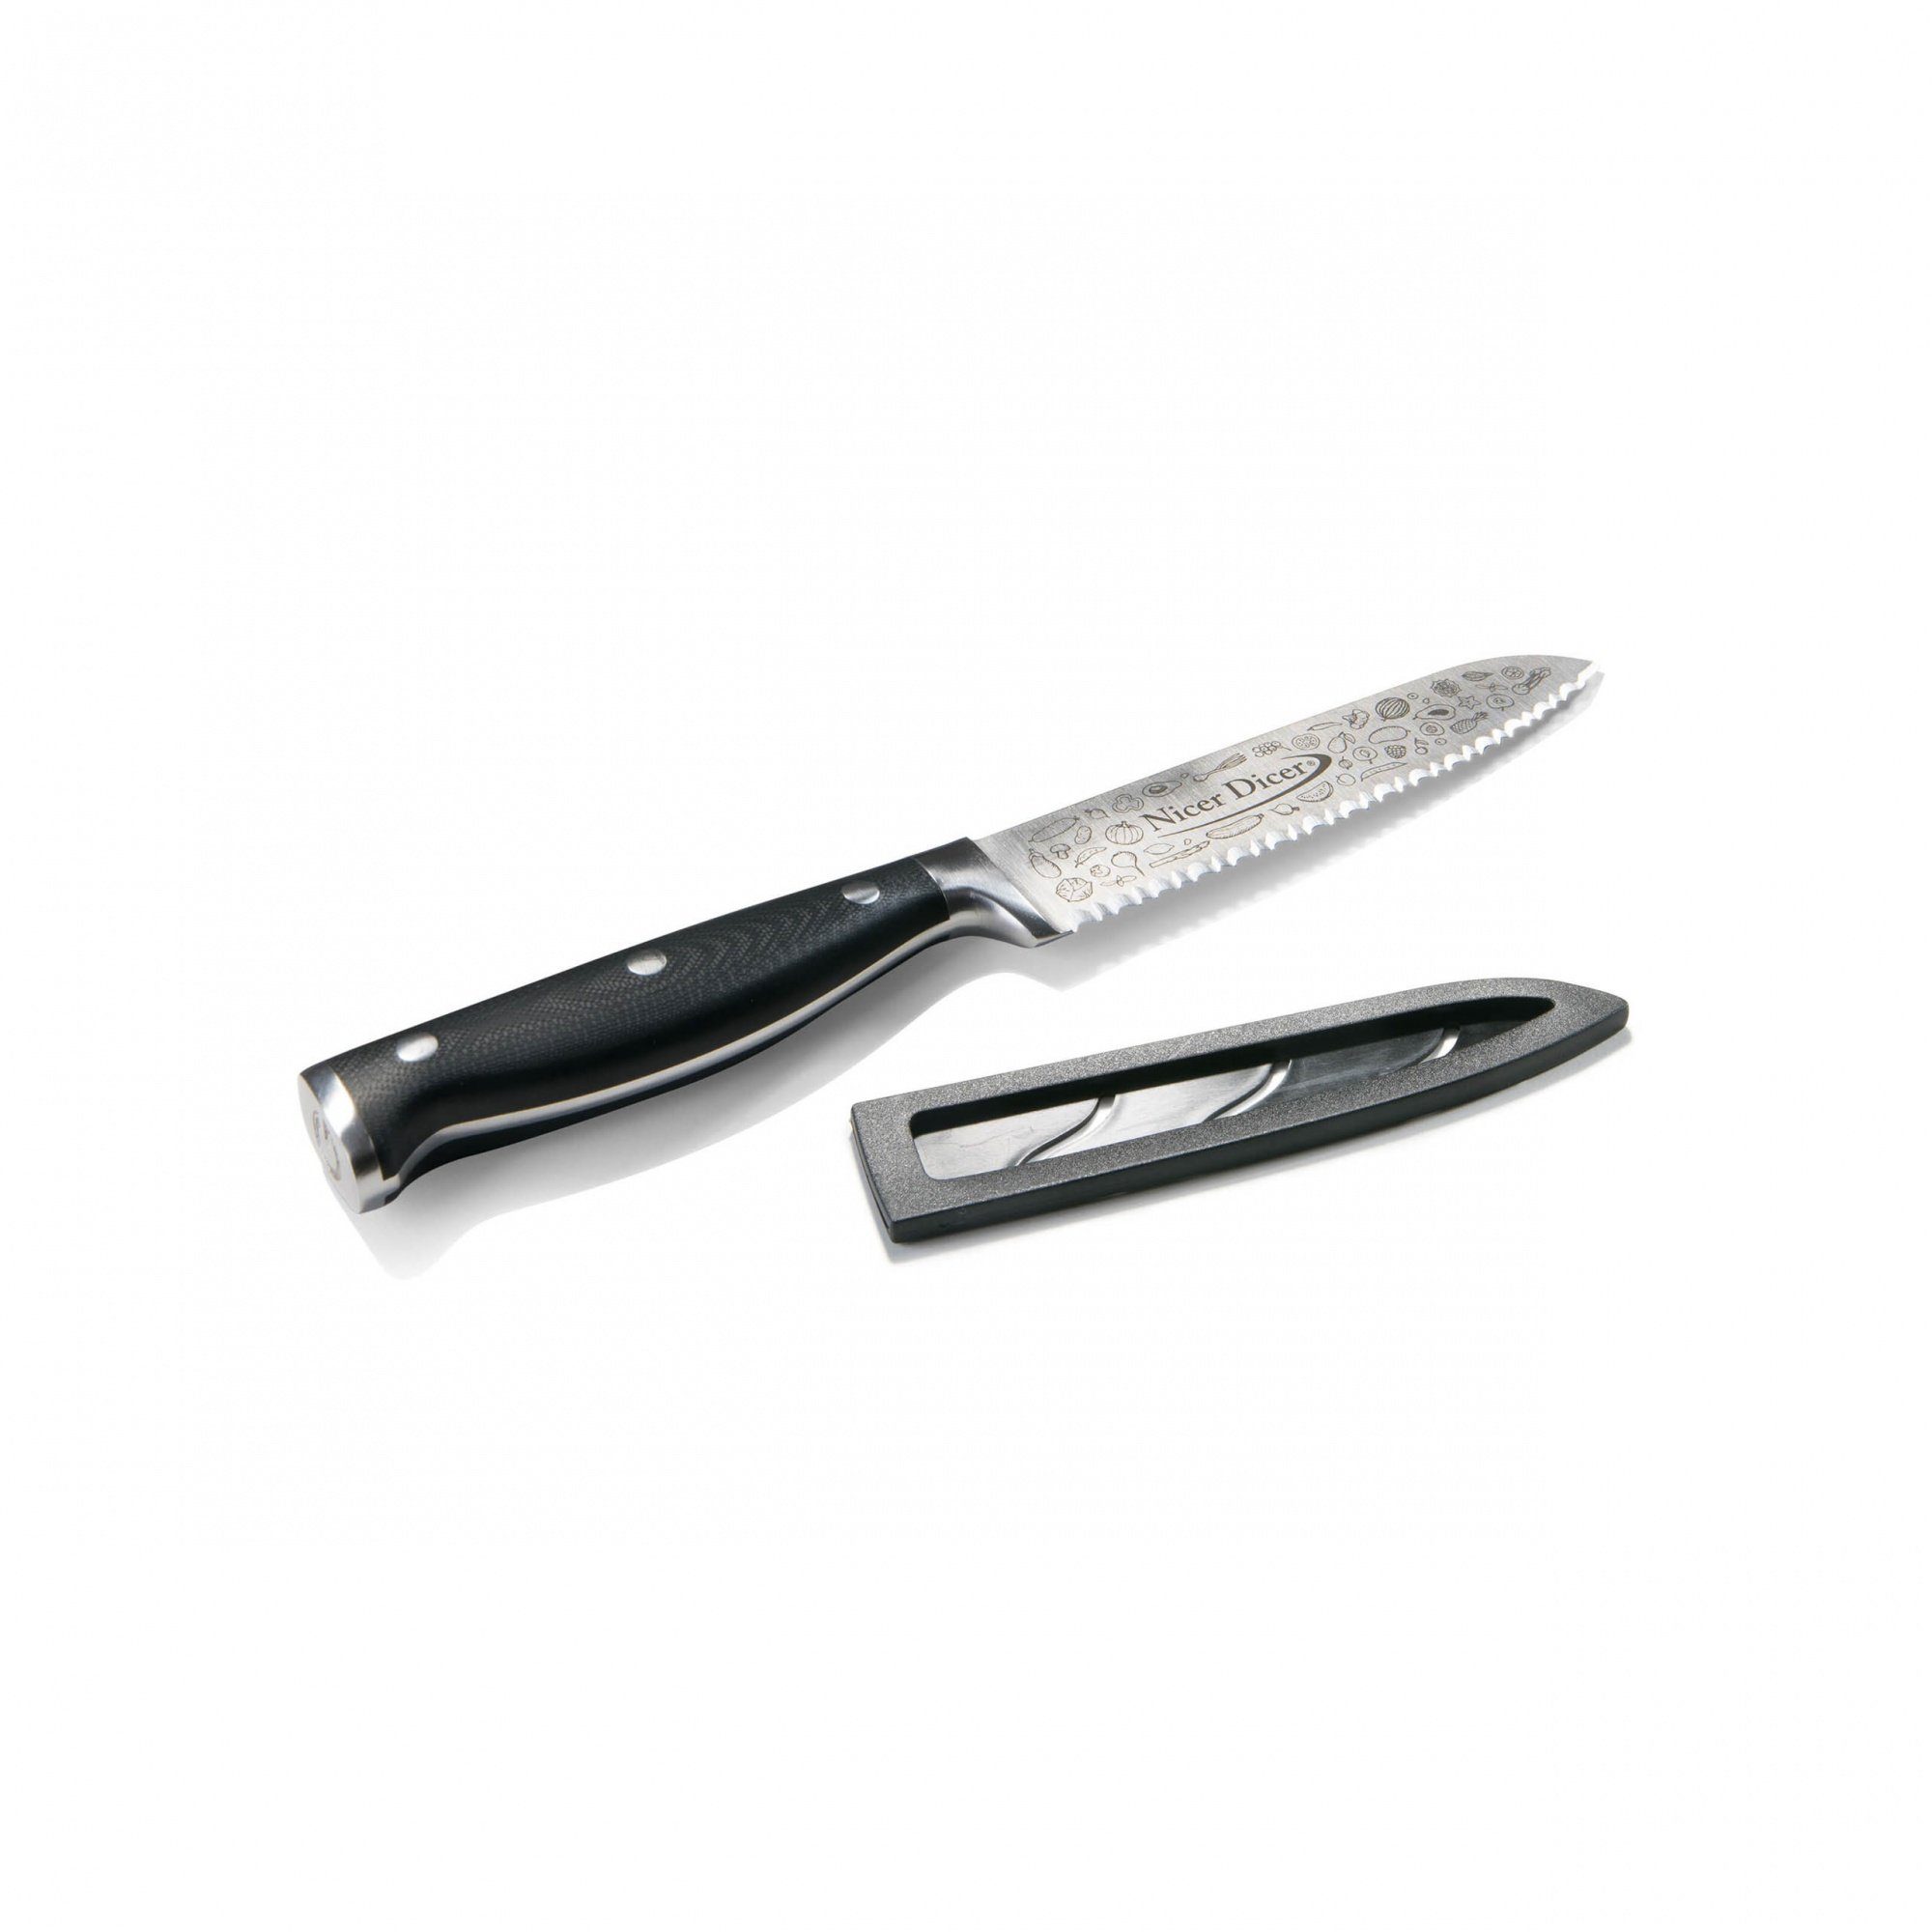 Genius Universalmesser Nicer Dicer mit Knife, Edelstahl Allzweckmesser (13 Wellenschnitt aus Professional cm)